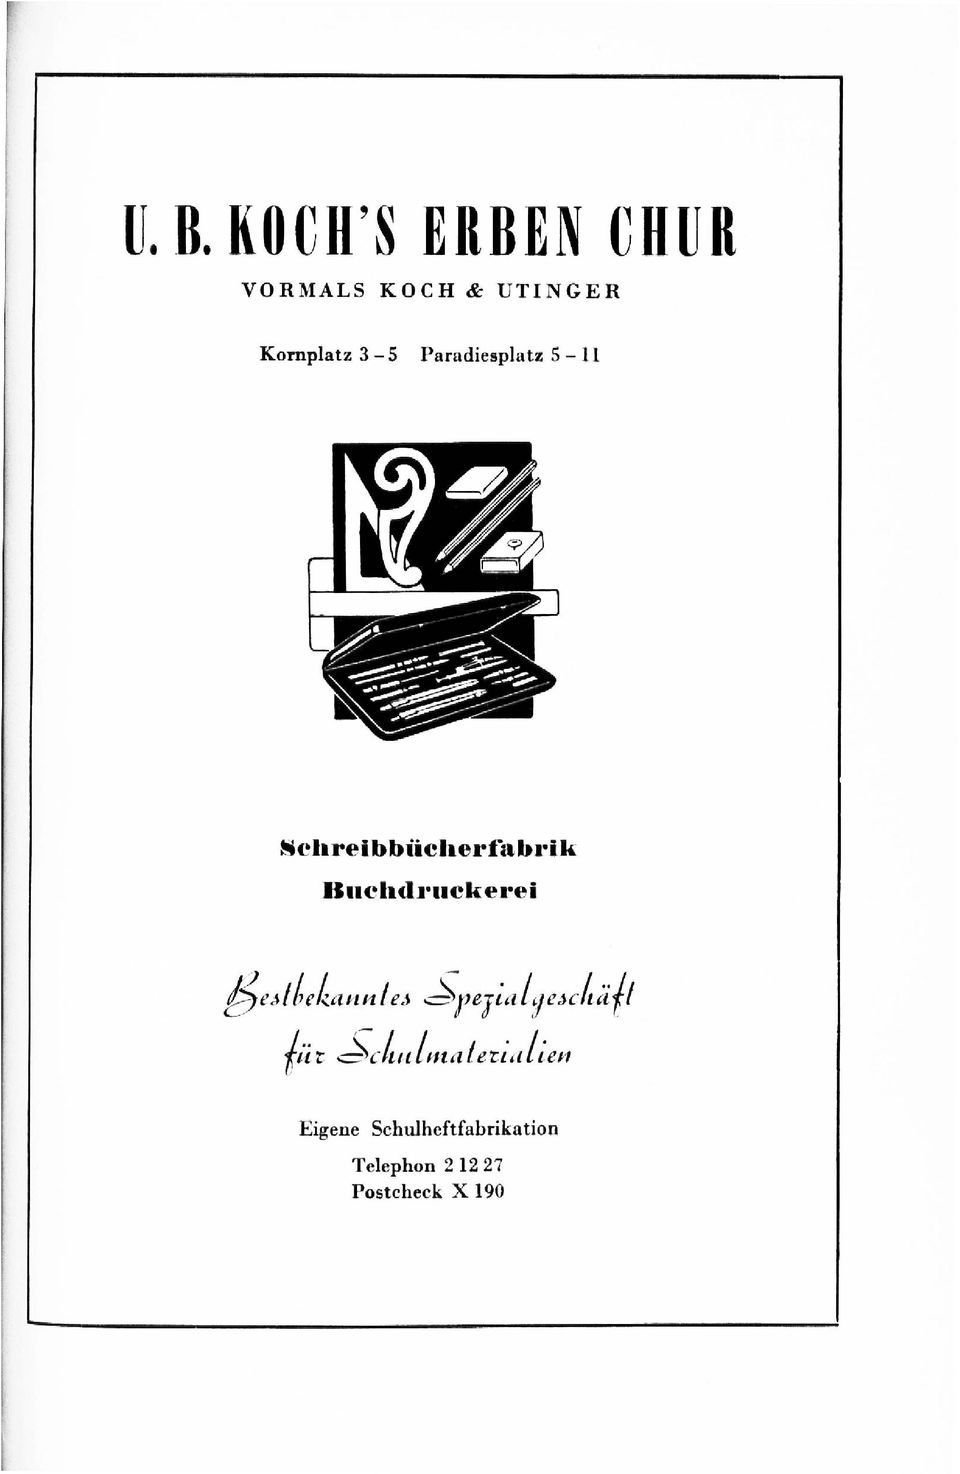 Sclireibbiicherfabrik Buchdrucker«!